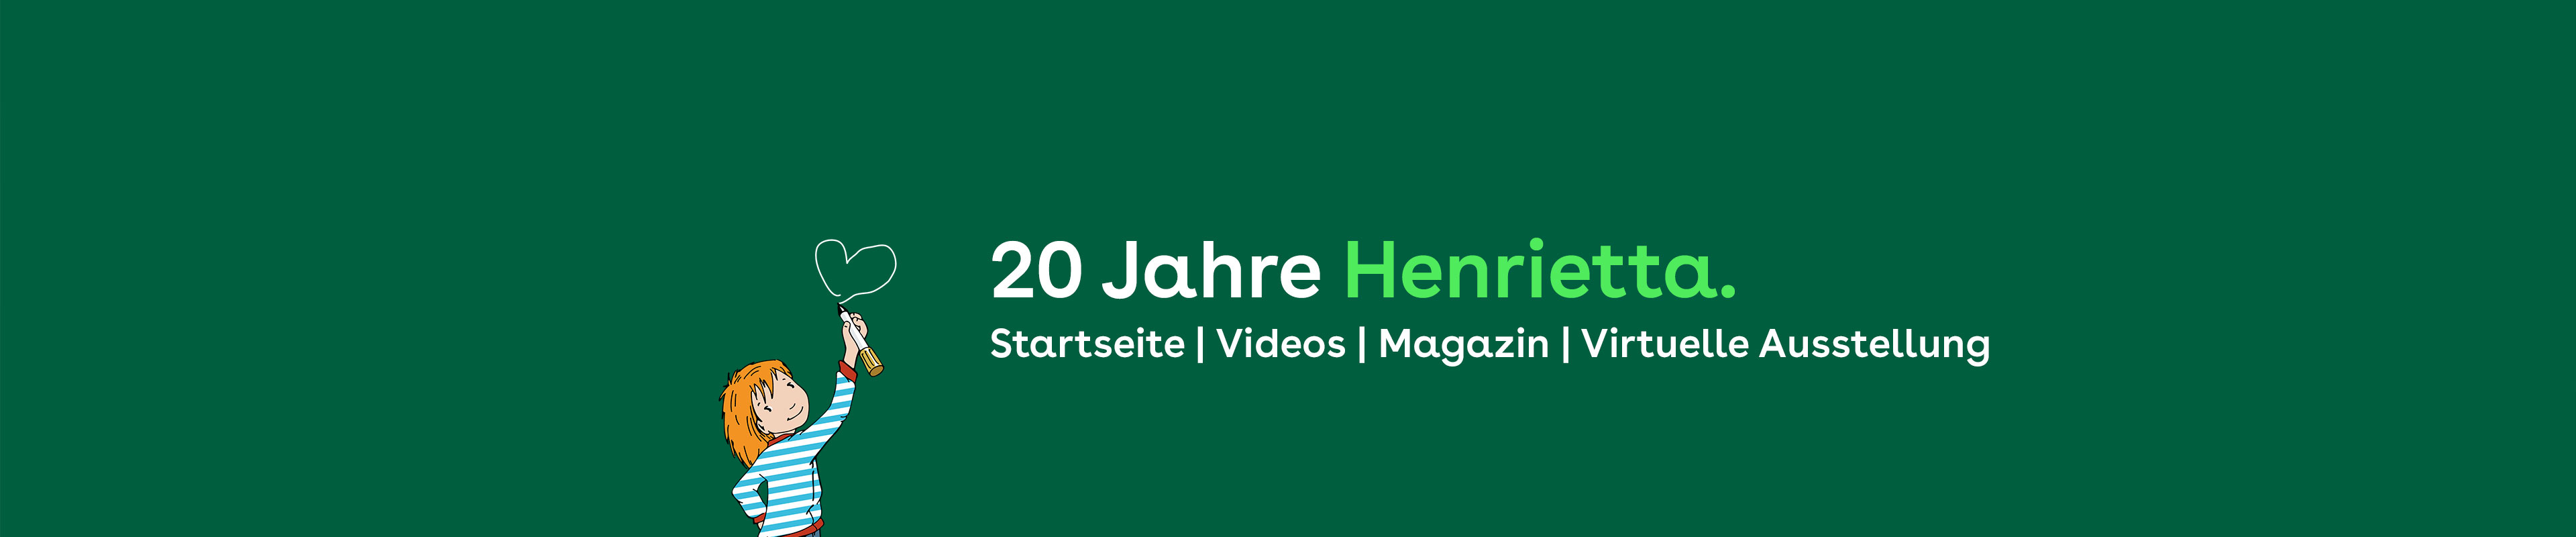 20 Jahre Henrietta & Co.